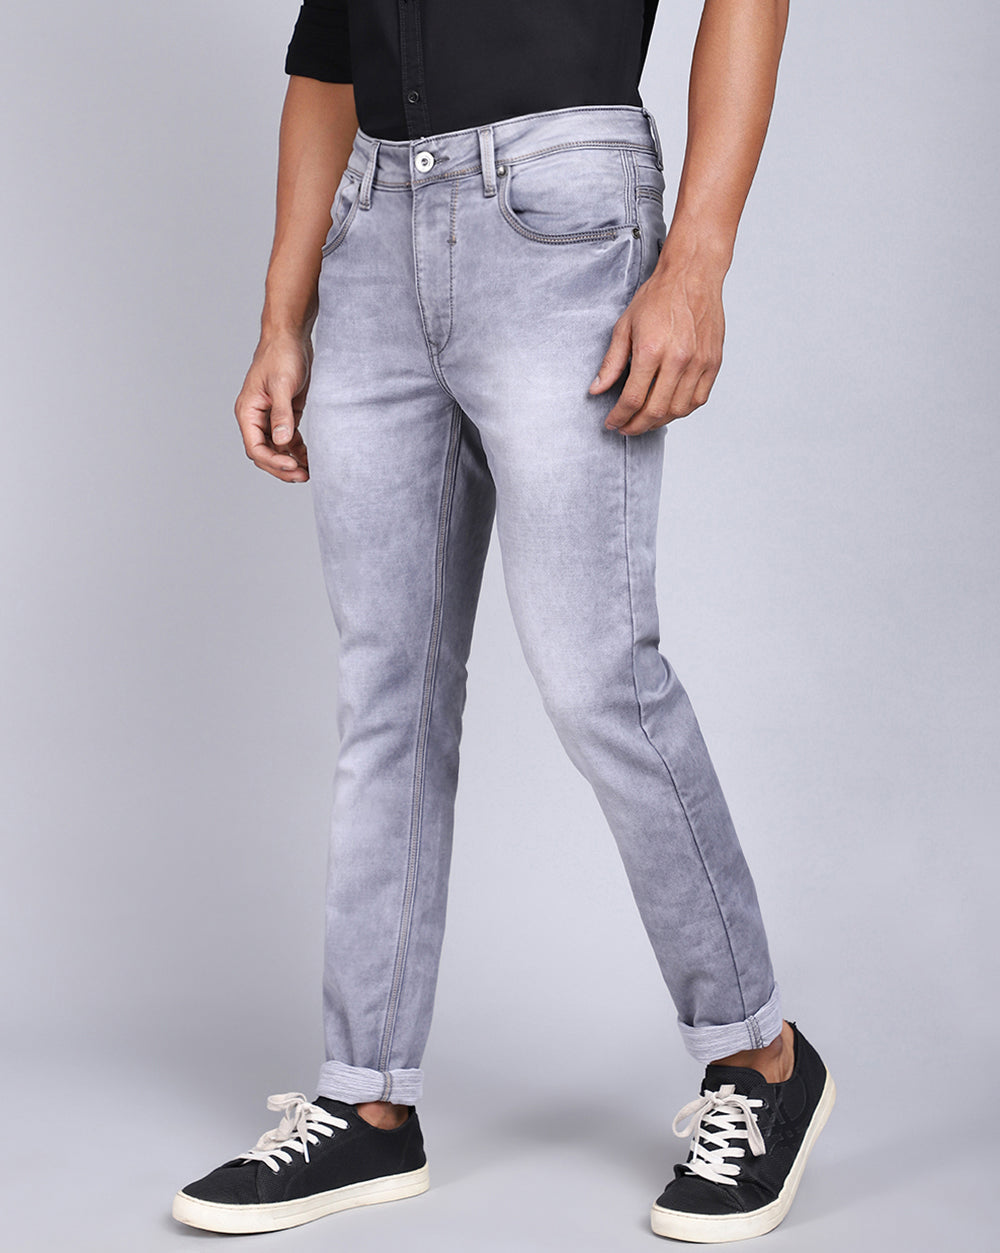 Super Slim Fit Light Grey Jeans